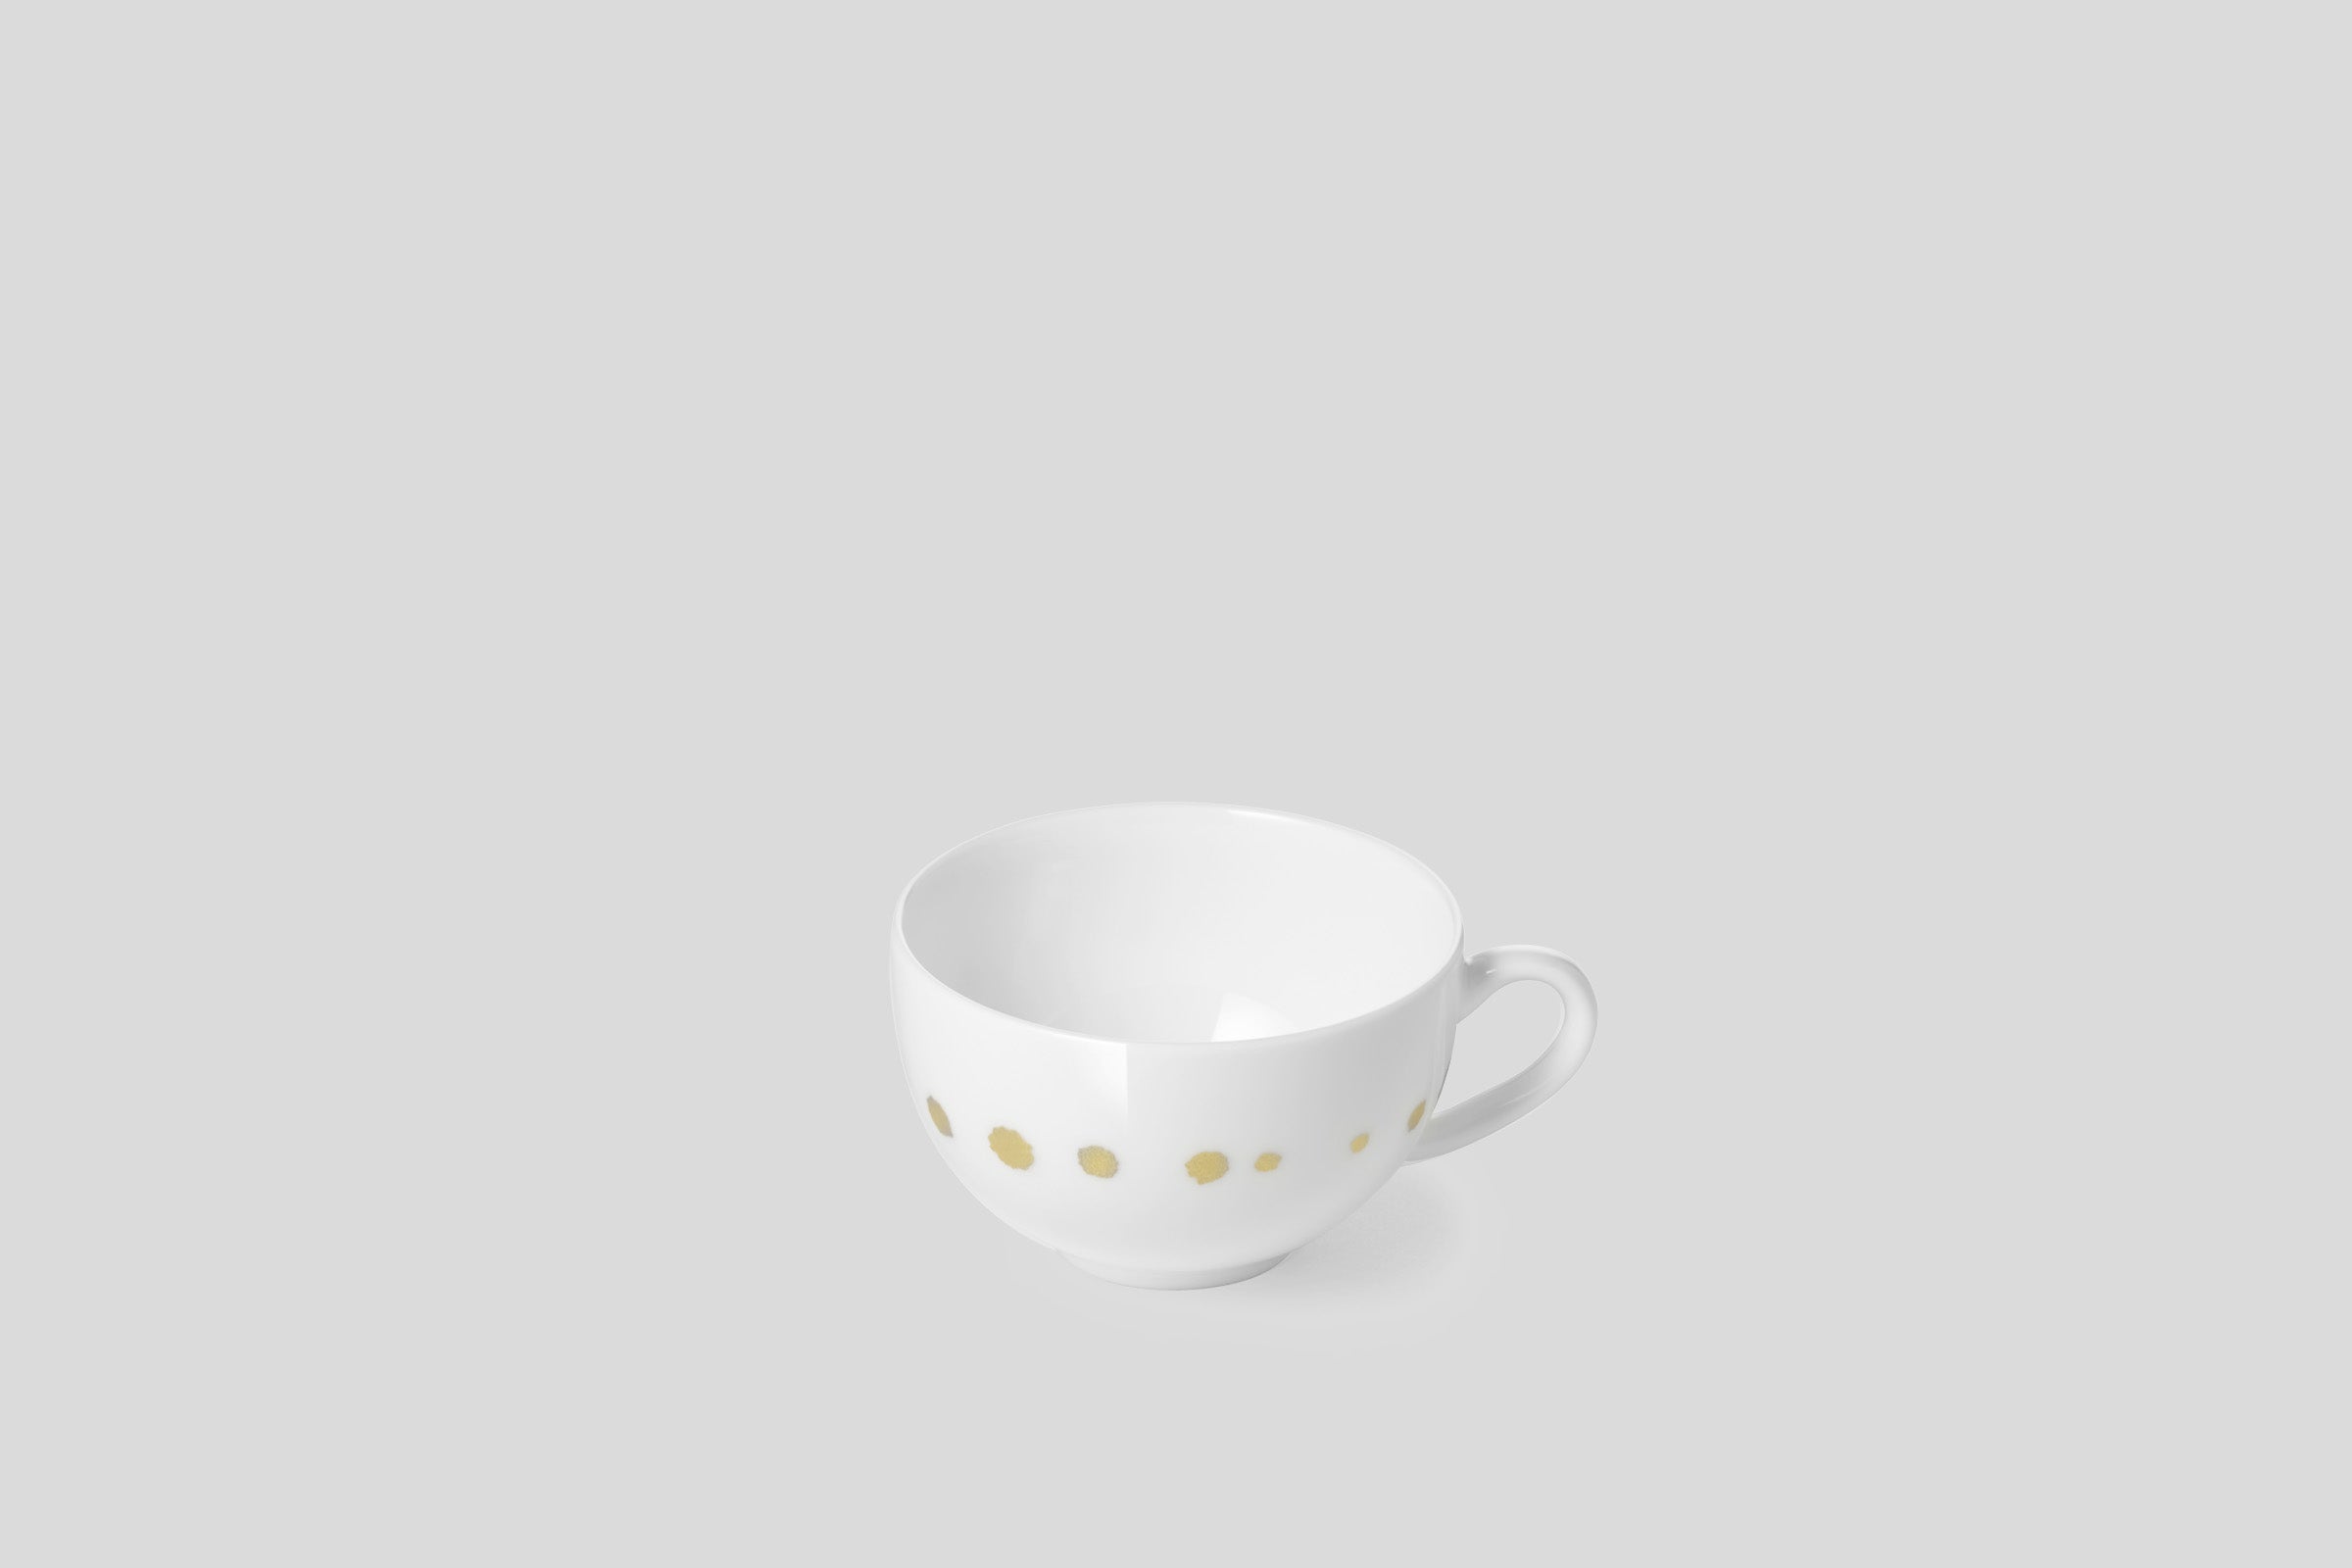 Designer-Luxury-Modern-Dibbern Golden Pearls Espresso Cup-Dibbern-Golden Pearls-Gold-Bodo Sperlein-Bone China-Designer-Luxury-Modern-Tasse-Becher-Kaffee Tasse